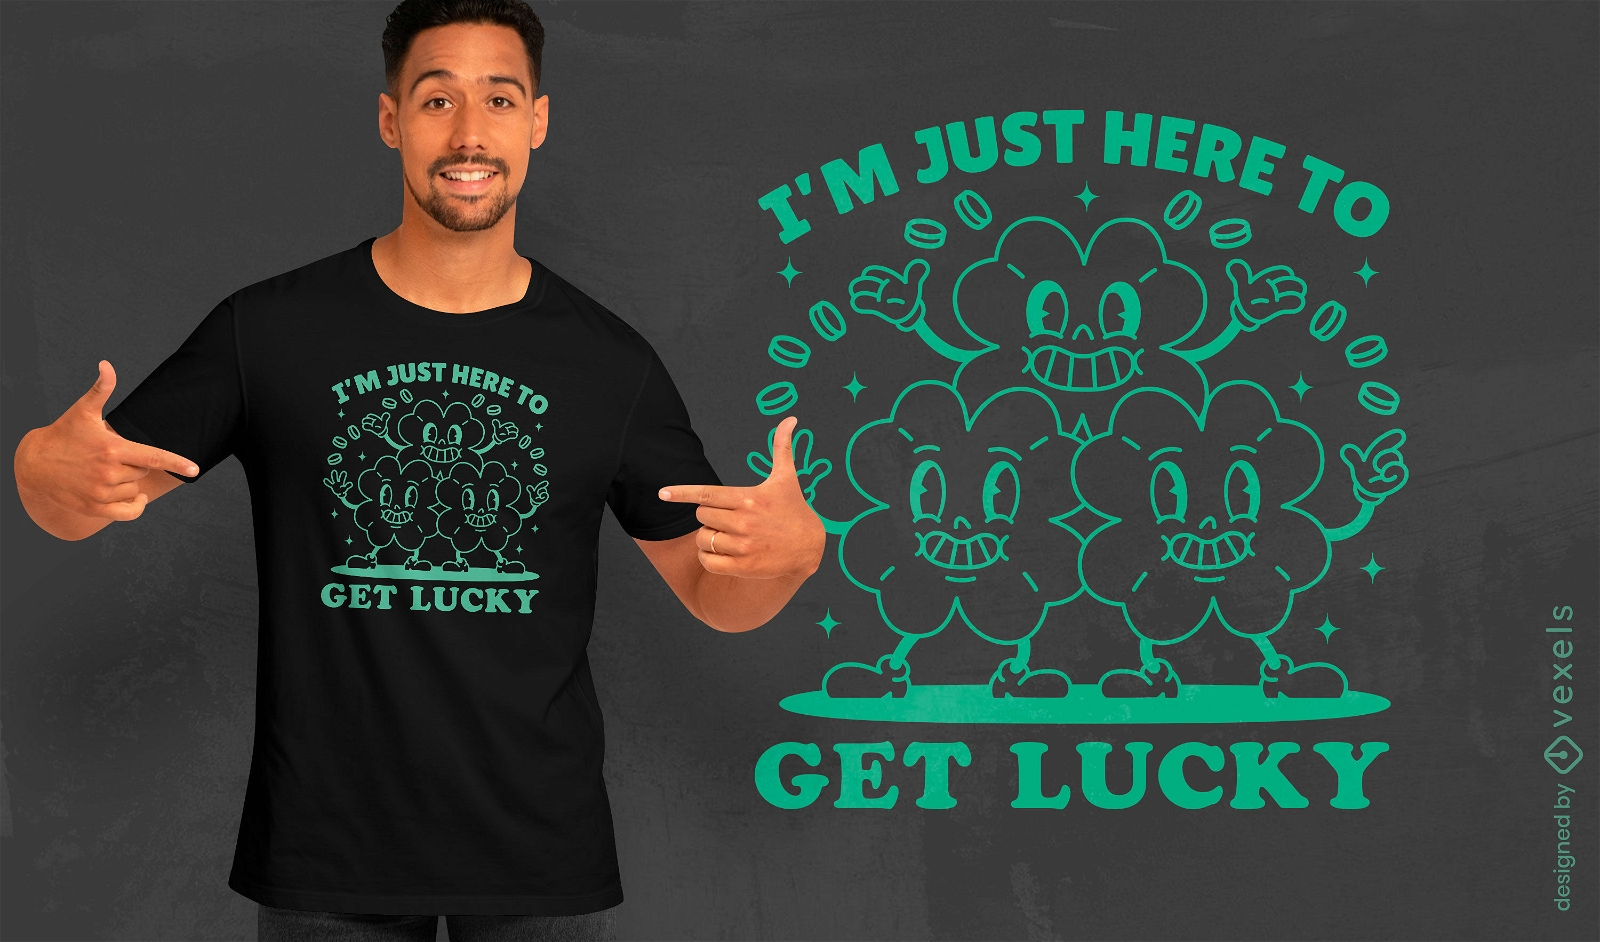 Get lucky clovers t-shirt design